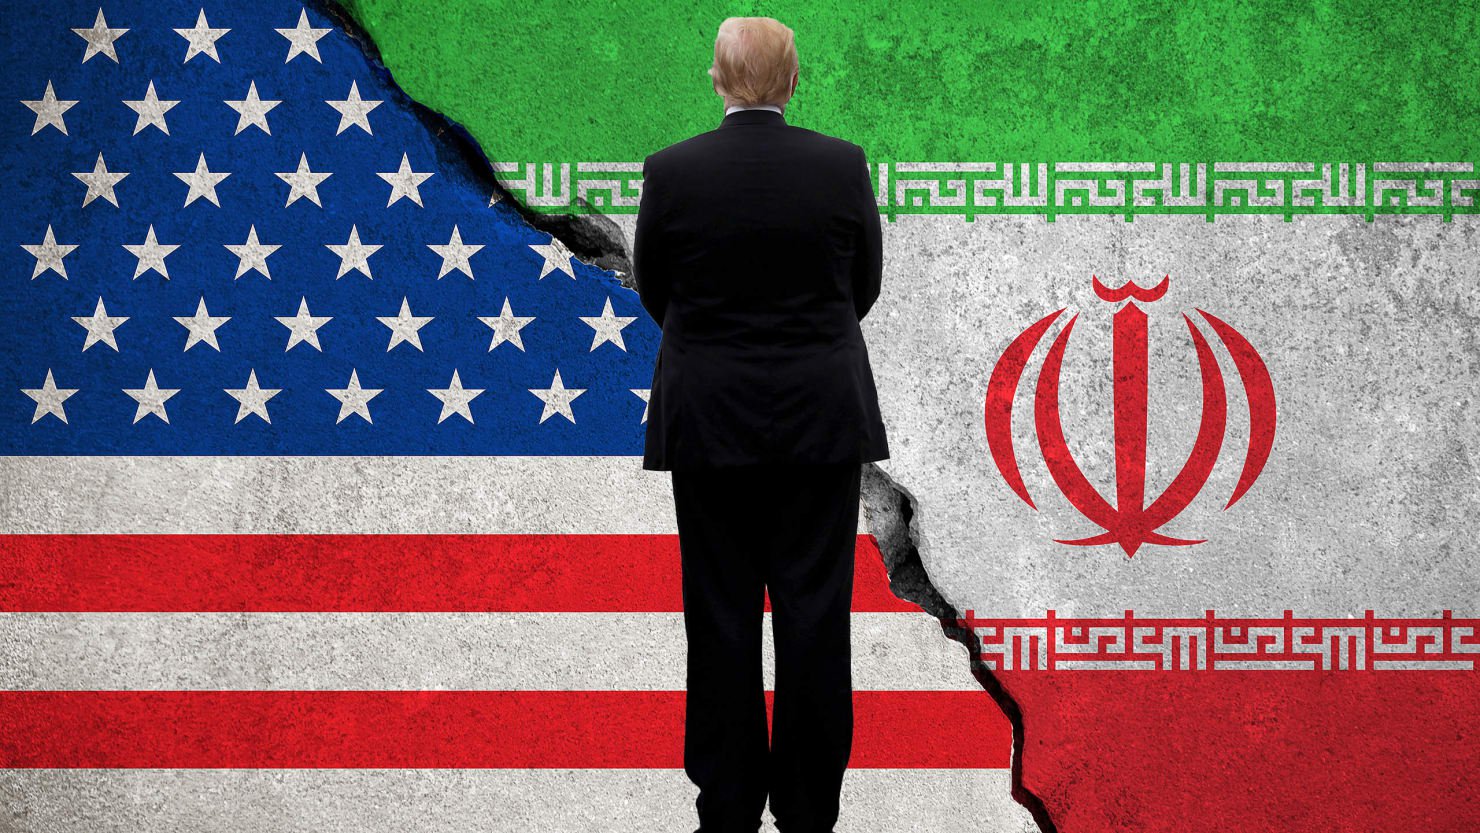 مسیر مطلوب برای ایران و آمریکا کدام است؛ دیپلماسی یا جنگ؟!